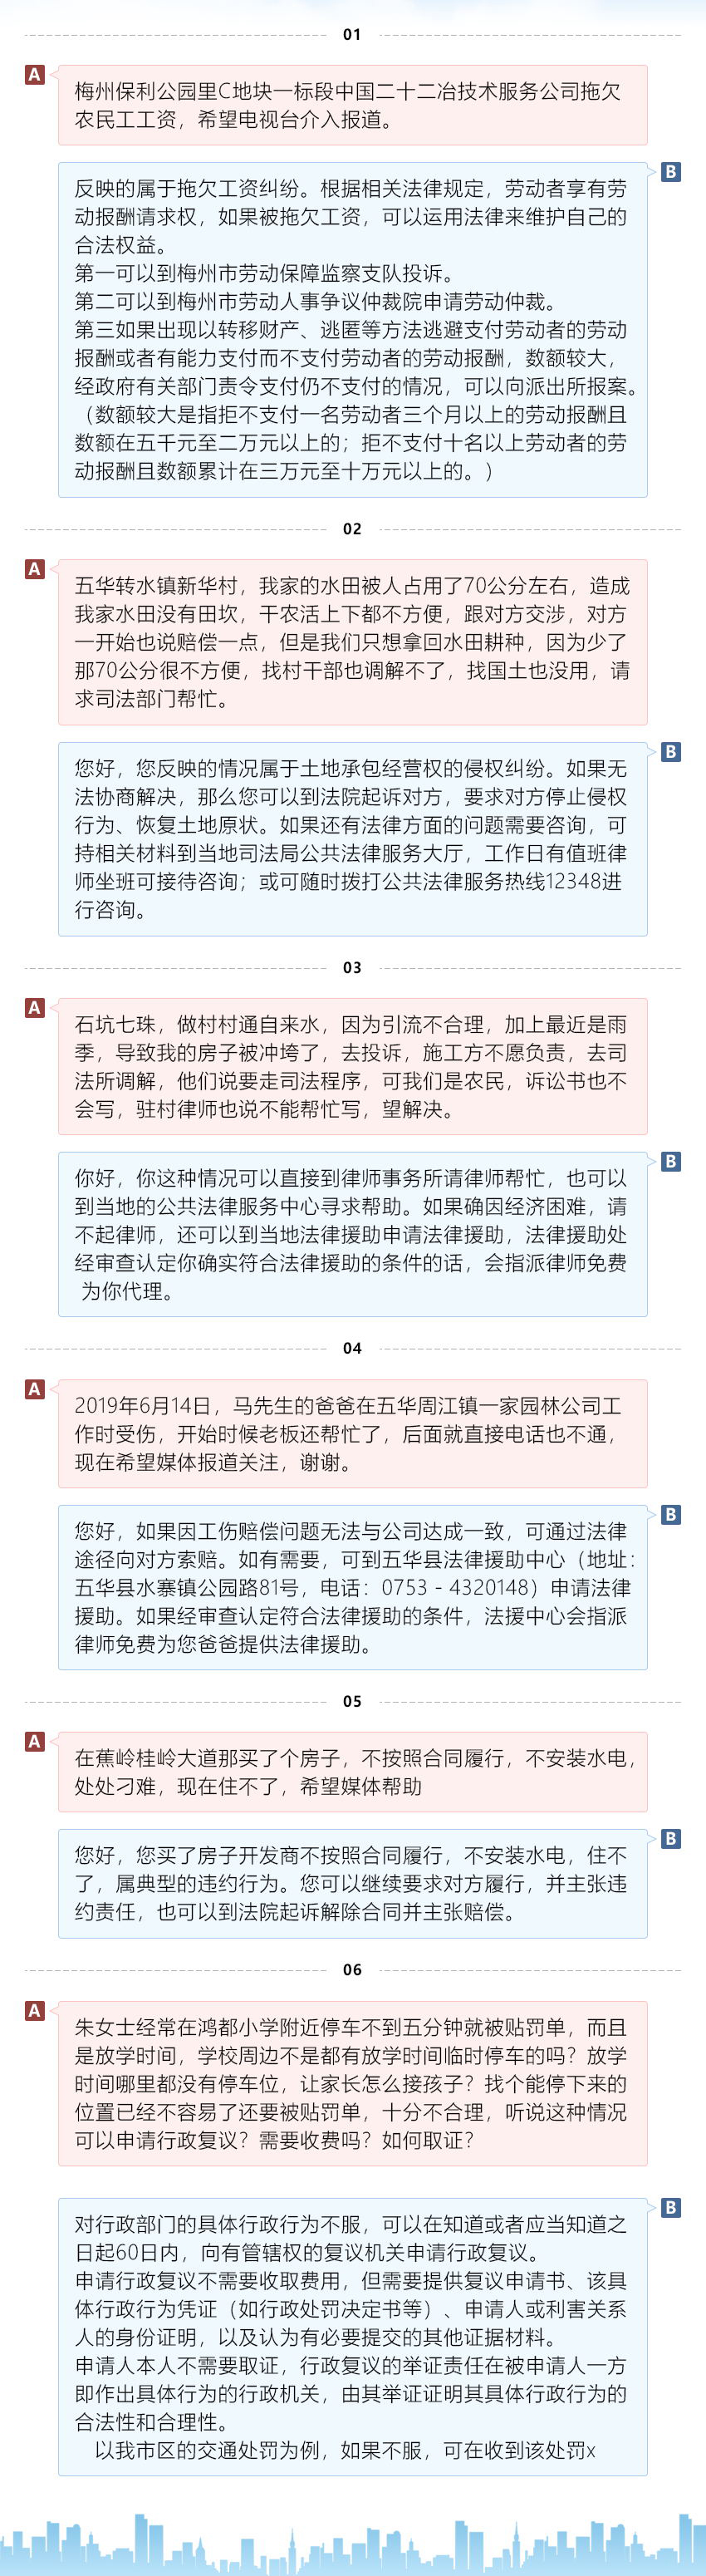 梅州市司法局行风热线问题回复_看图王.jpg